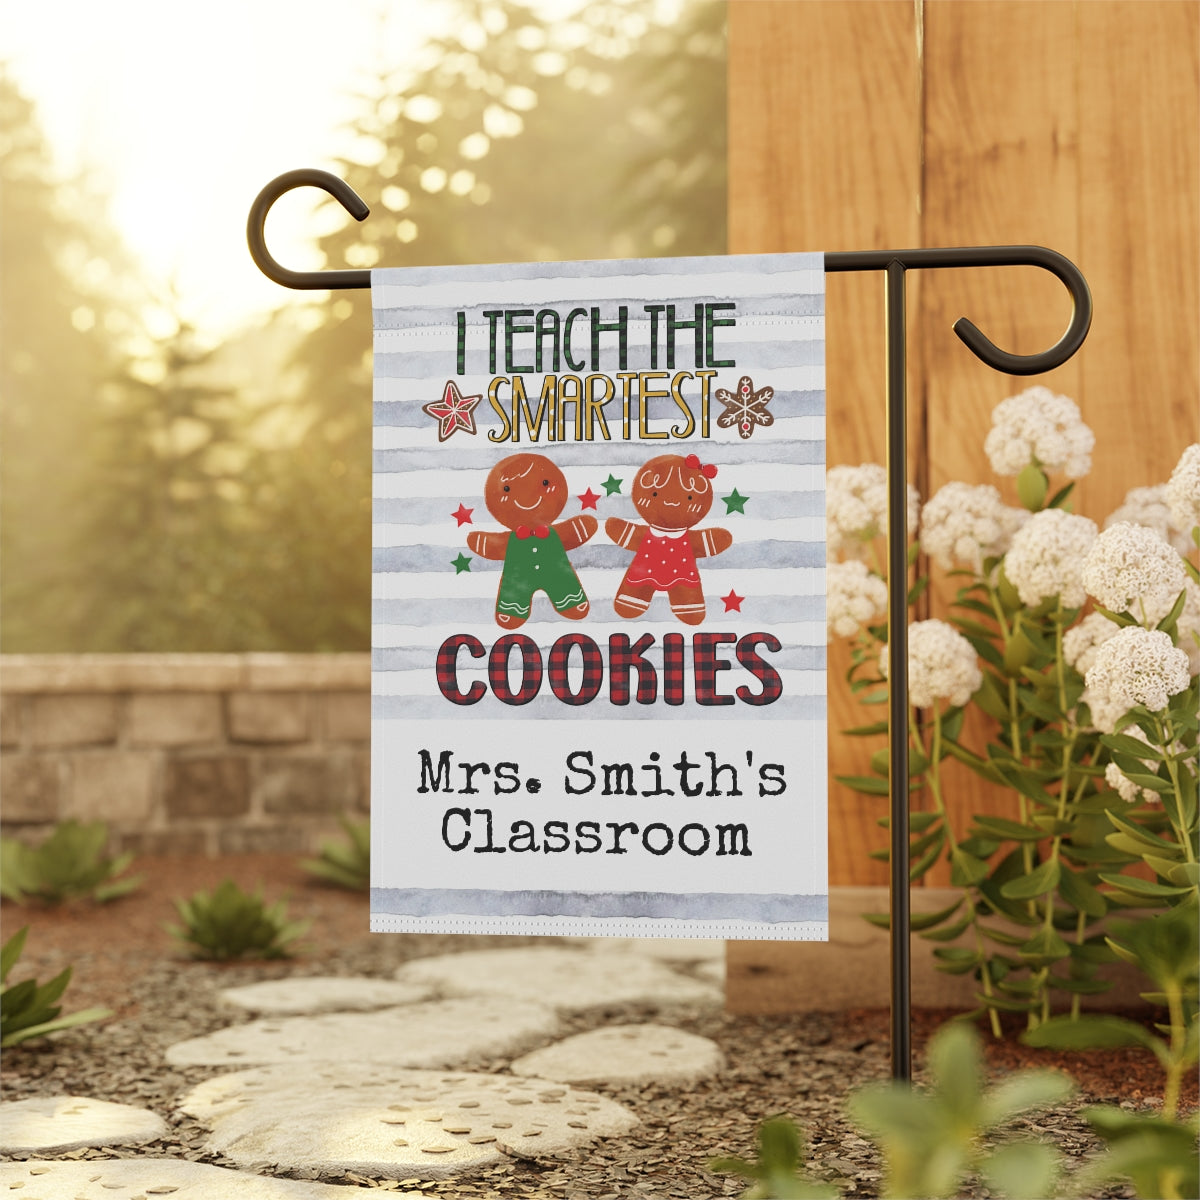 I Teach Smartest Cookies Teacher Christmas Garden Flag